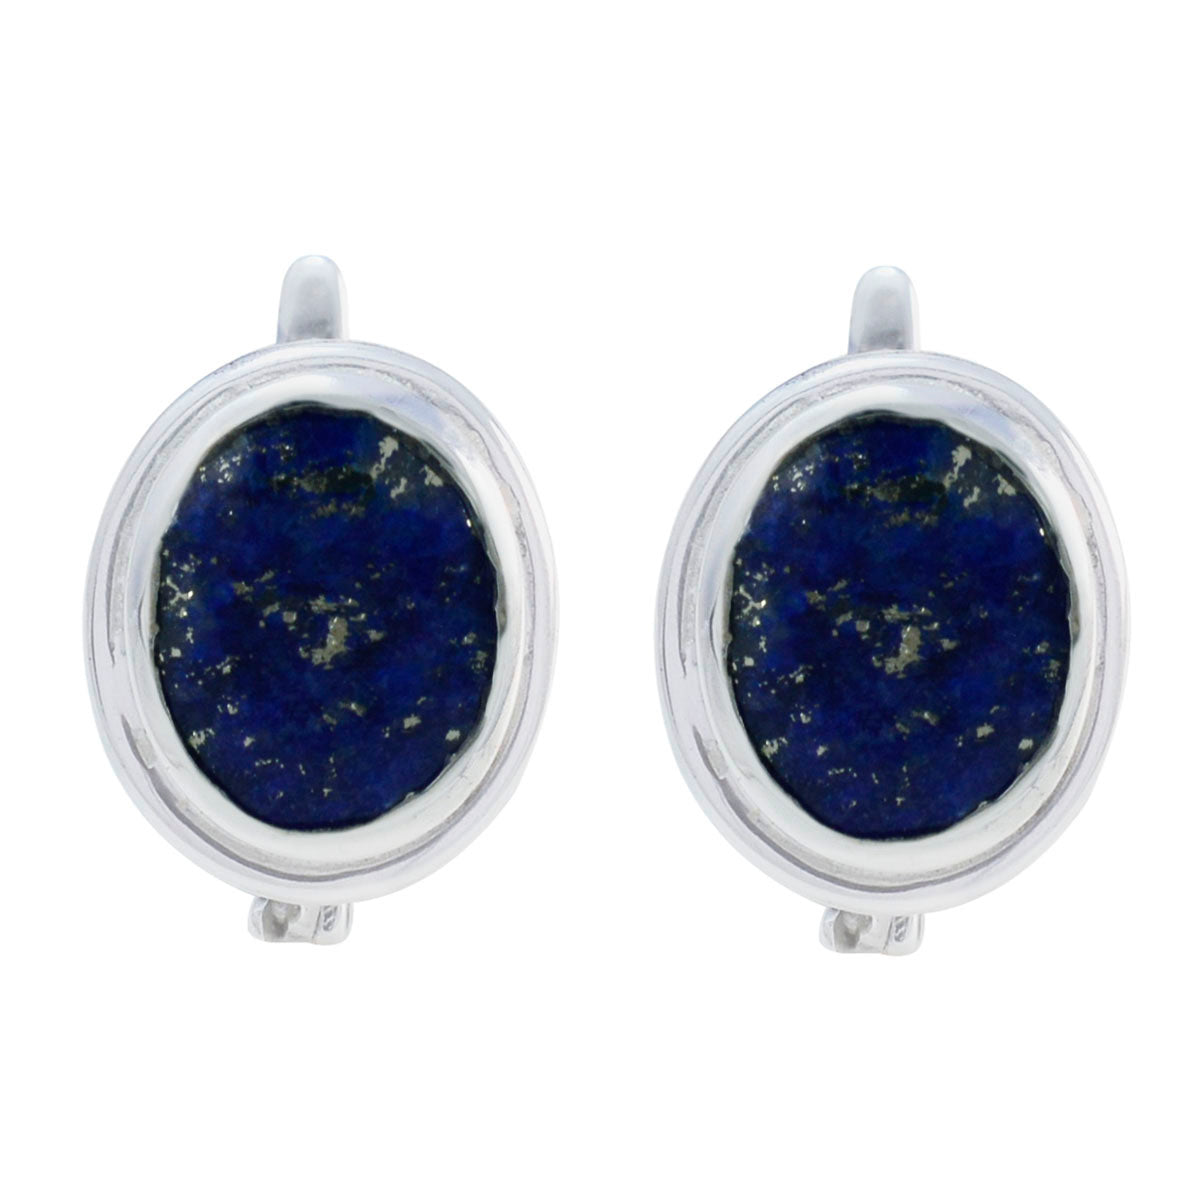 Riyo esthétique boucle d'oreille en argent sterling pour demoiselle lapis lazuli boucle d'oreille réglage de la lunette boucle d'oreille bleue boucle d'oreille